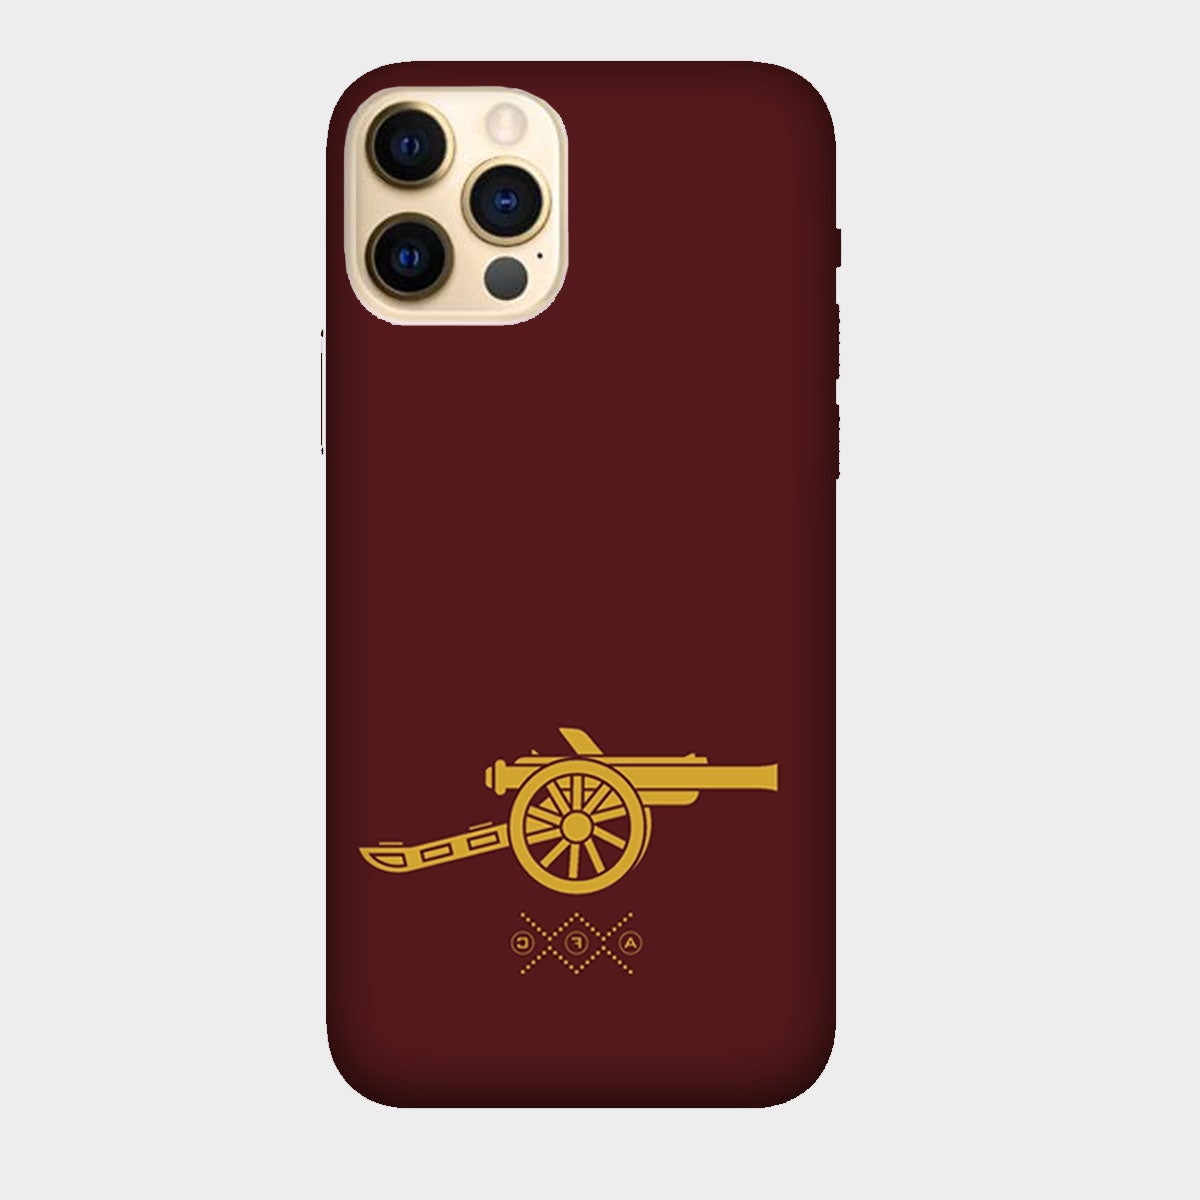 Arsenal - Gunner- Maroon - Mobile Phone Cover - Hard Case